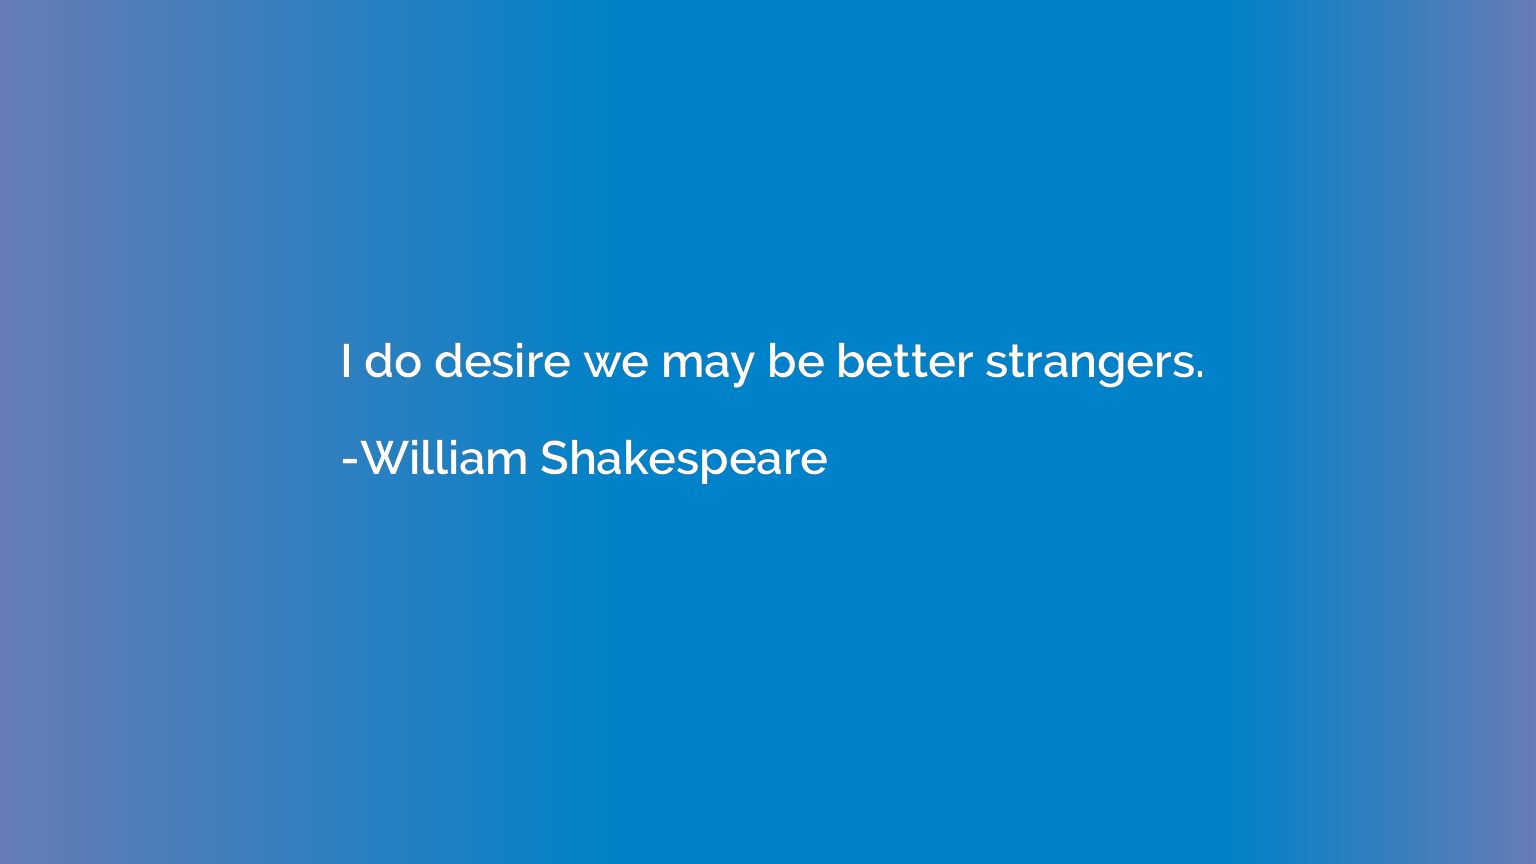 I do desire we may be better strangers.